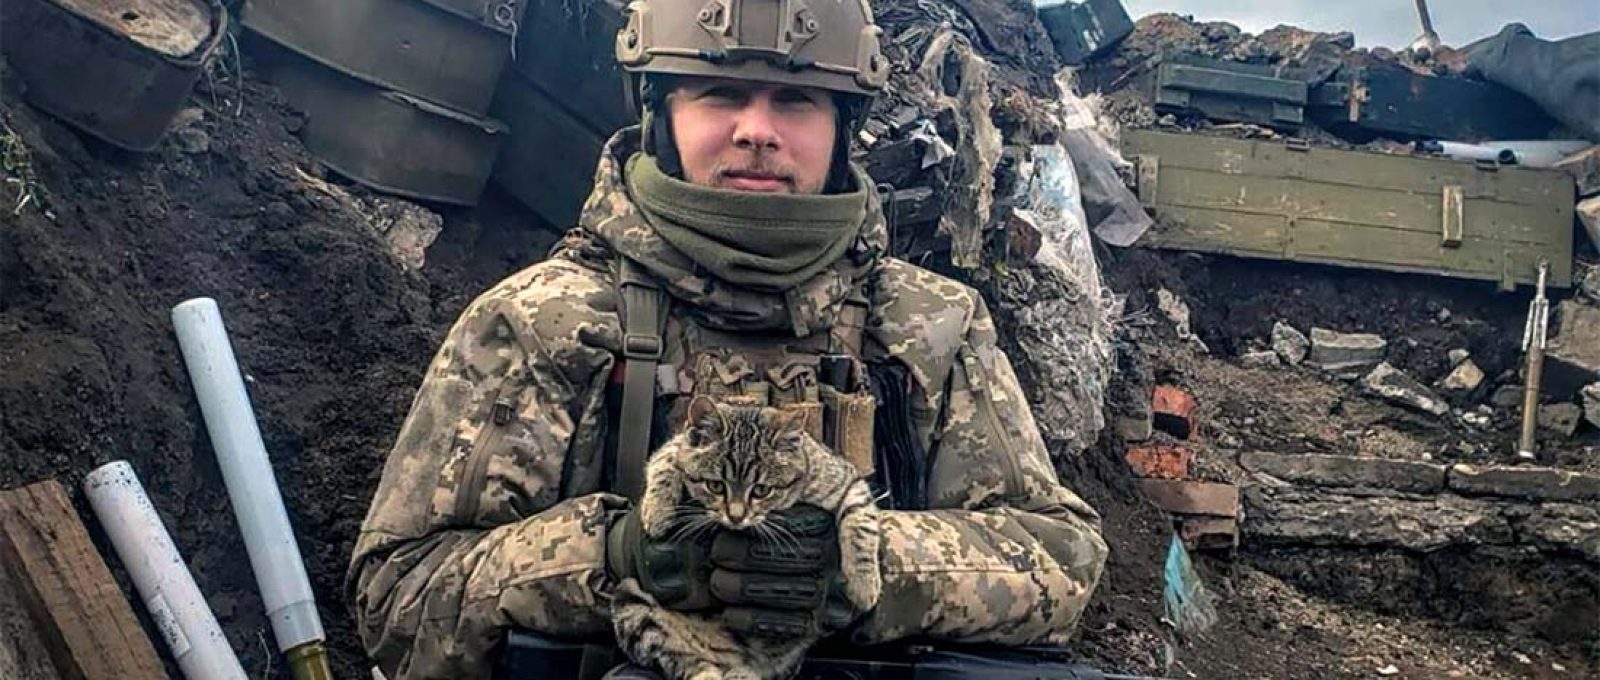 Um soldado de infantaria ucraniano da 110ª Brigada posa para uma foto em Avdeevka, região de Donetsk, Ucrânia (Viktor Biliak/Associated Press).